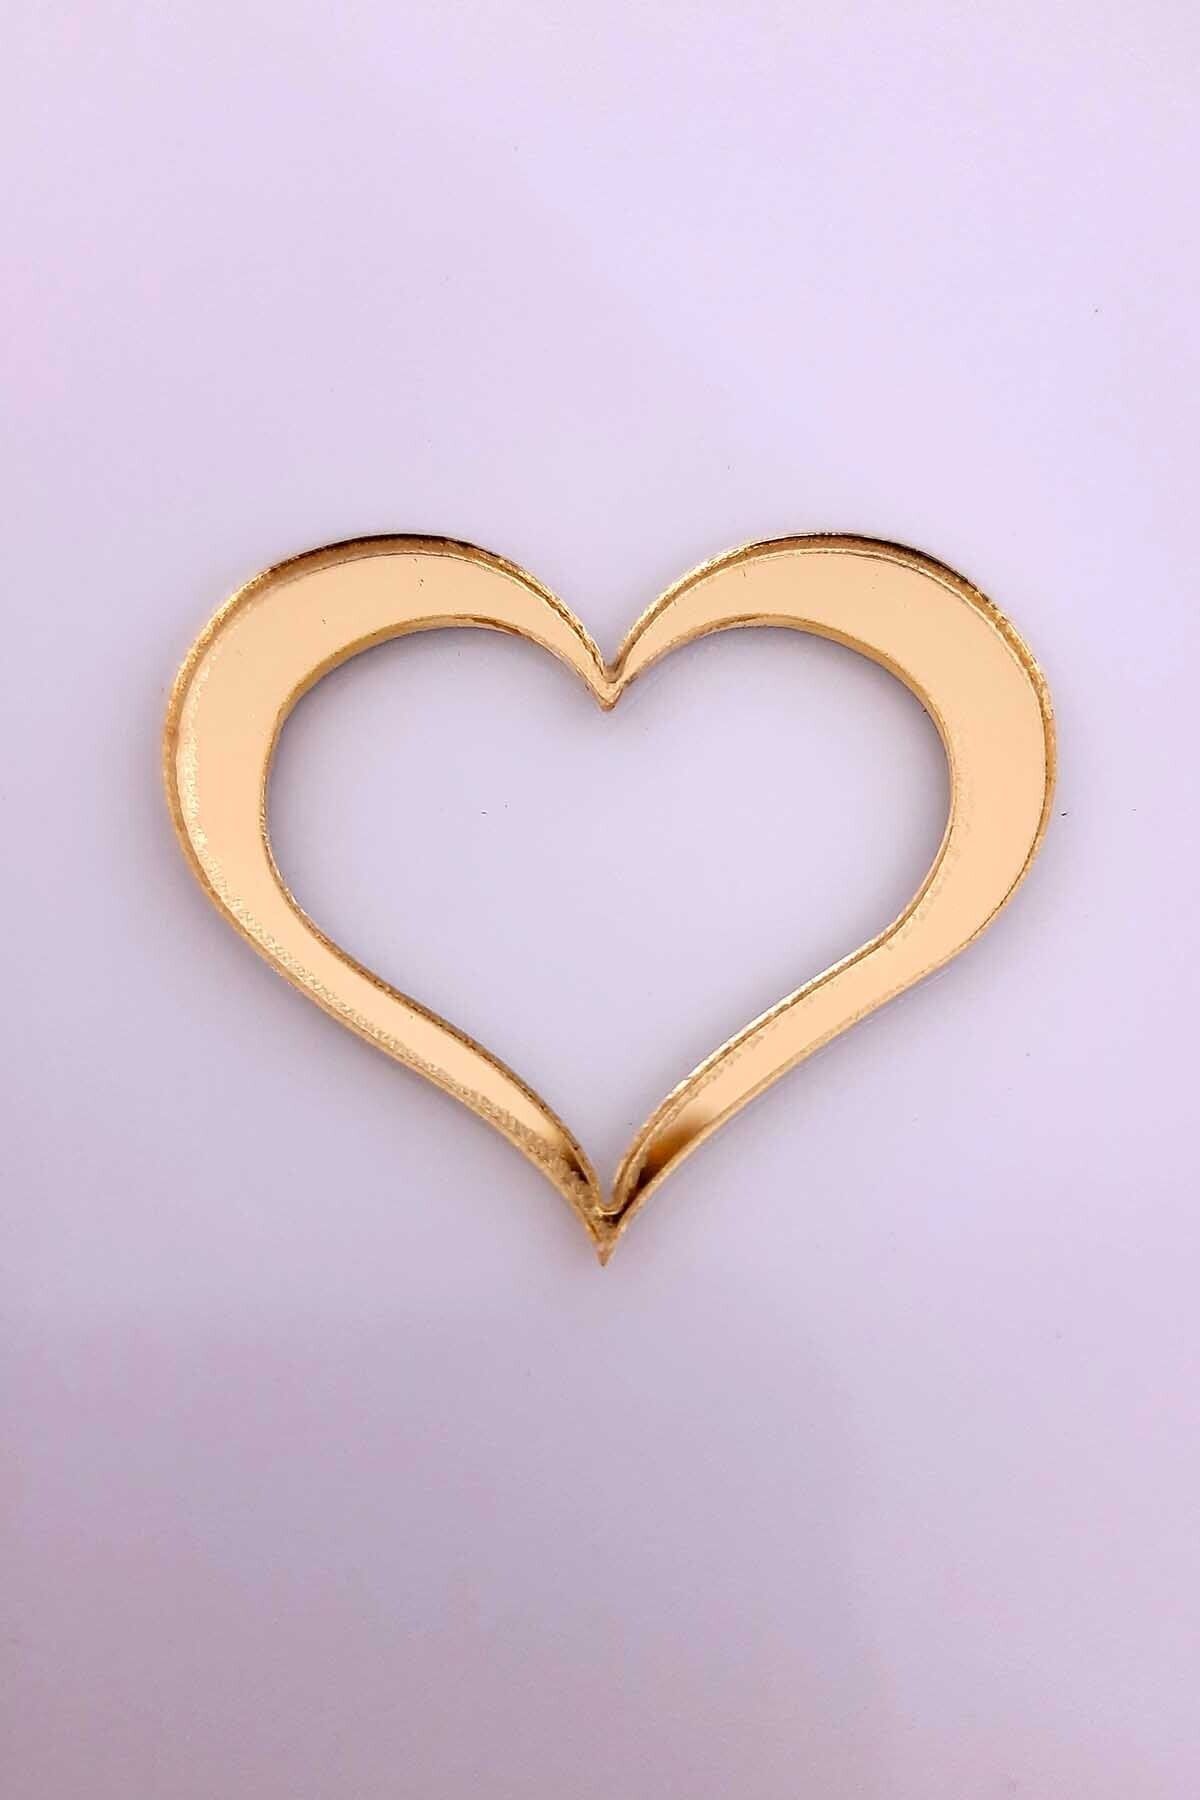 Aker Hediyelik Tavan Süslemesi 2cm Gold Pleksi Yıldız Kalp Dekoratif Ürün Oval Yuvarlak 5li Bulut Tasarımı